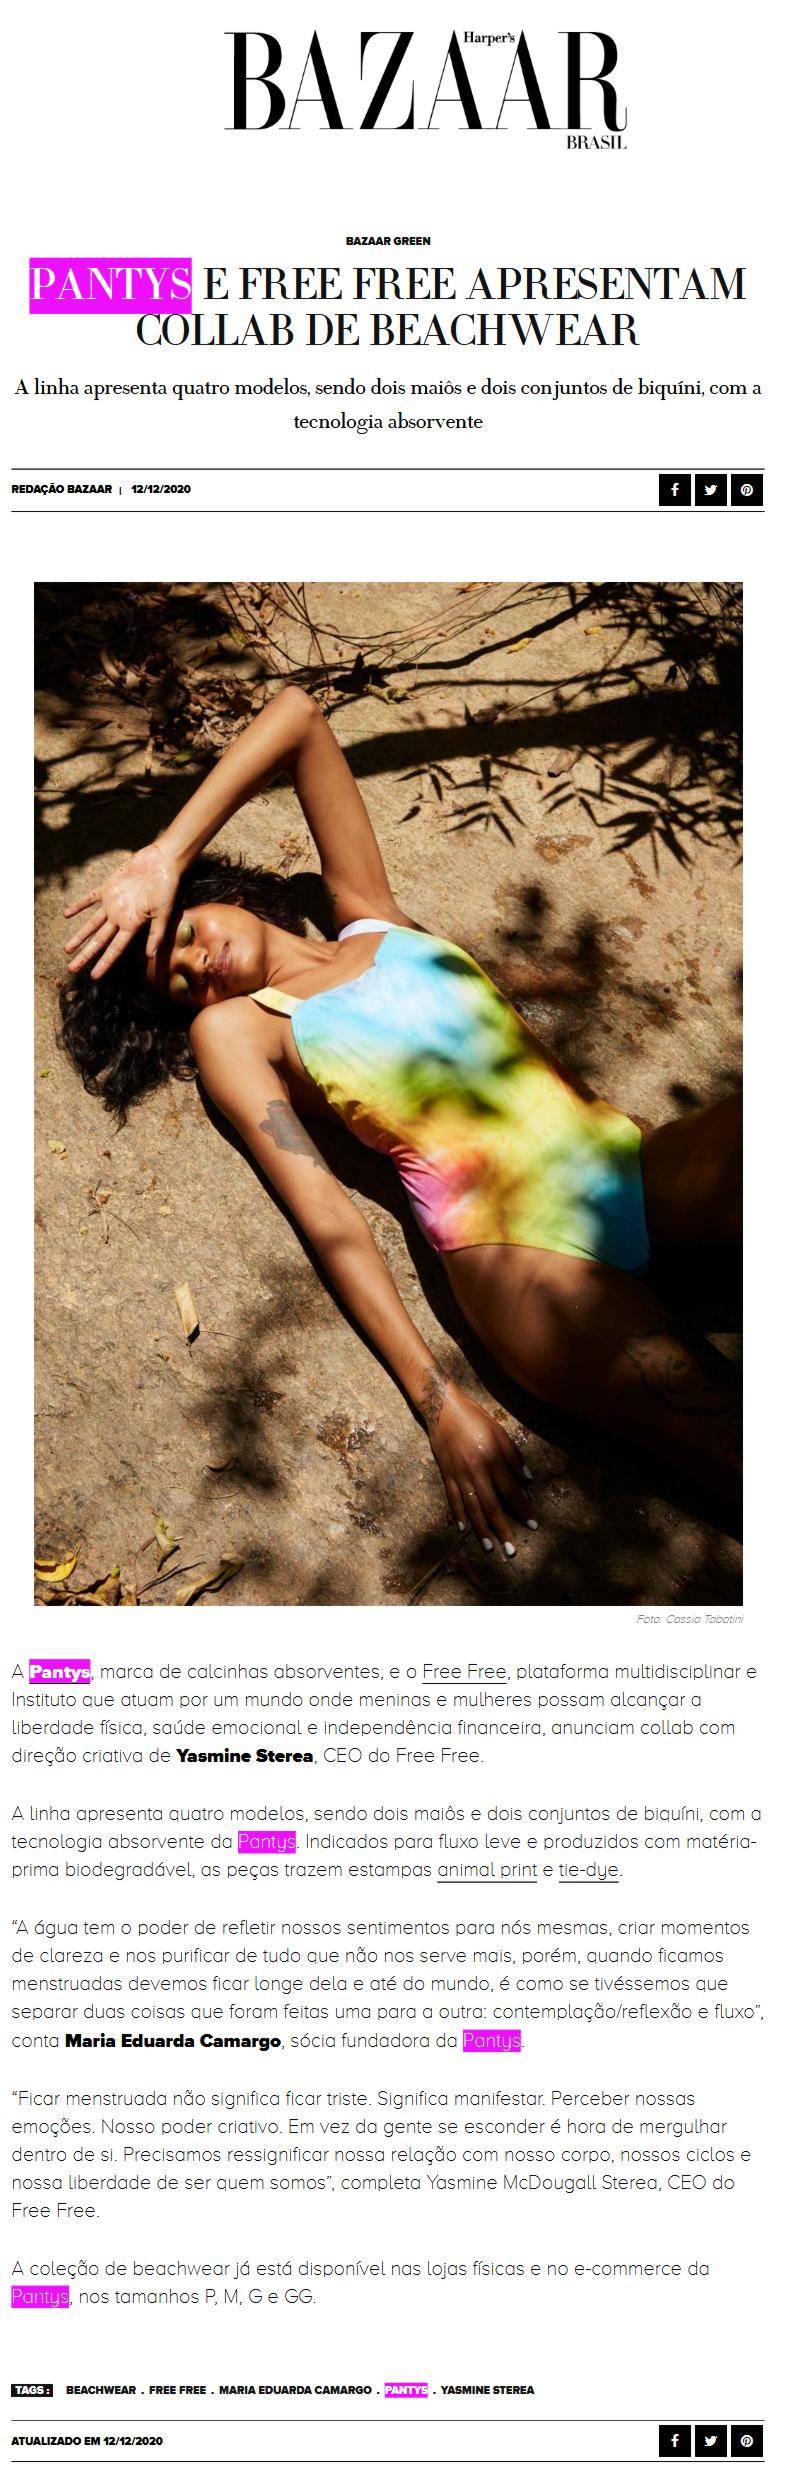 Artigo de resvista digital Bazaar e imagem de mulher deitada no chão com mão no rosto 